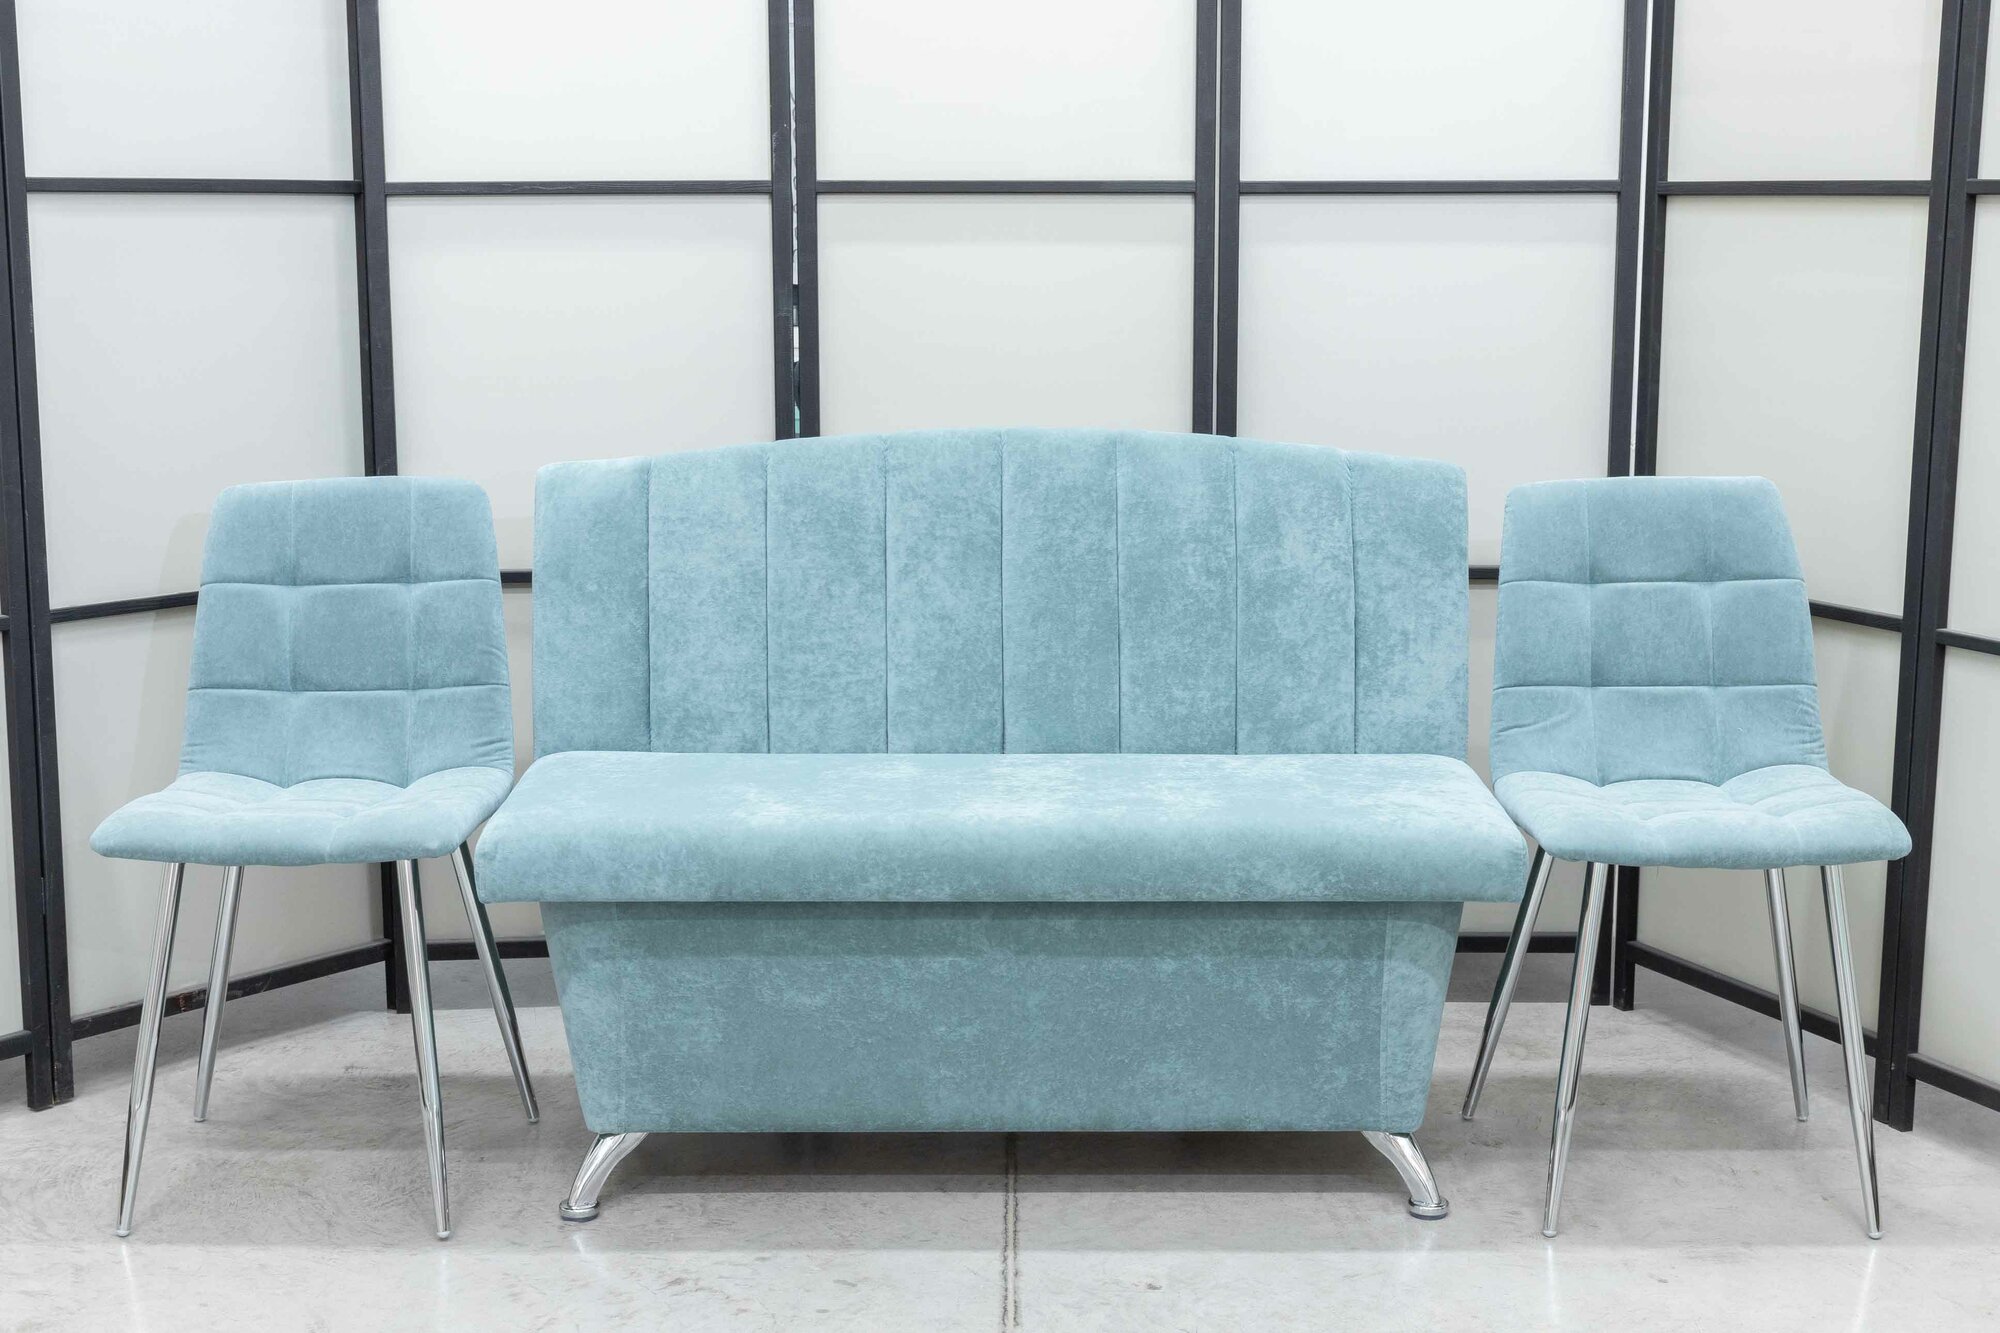 Кухонный диван Альт со стульями (2 шт.), 120х56 см, обивка моющаяся, антивандальная, антикоготь, цвет - ментол